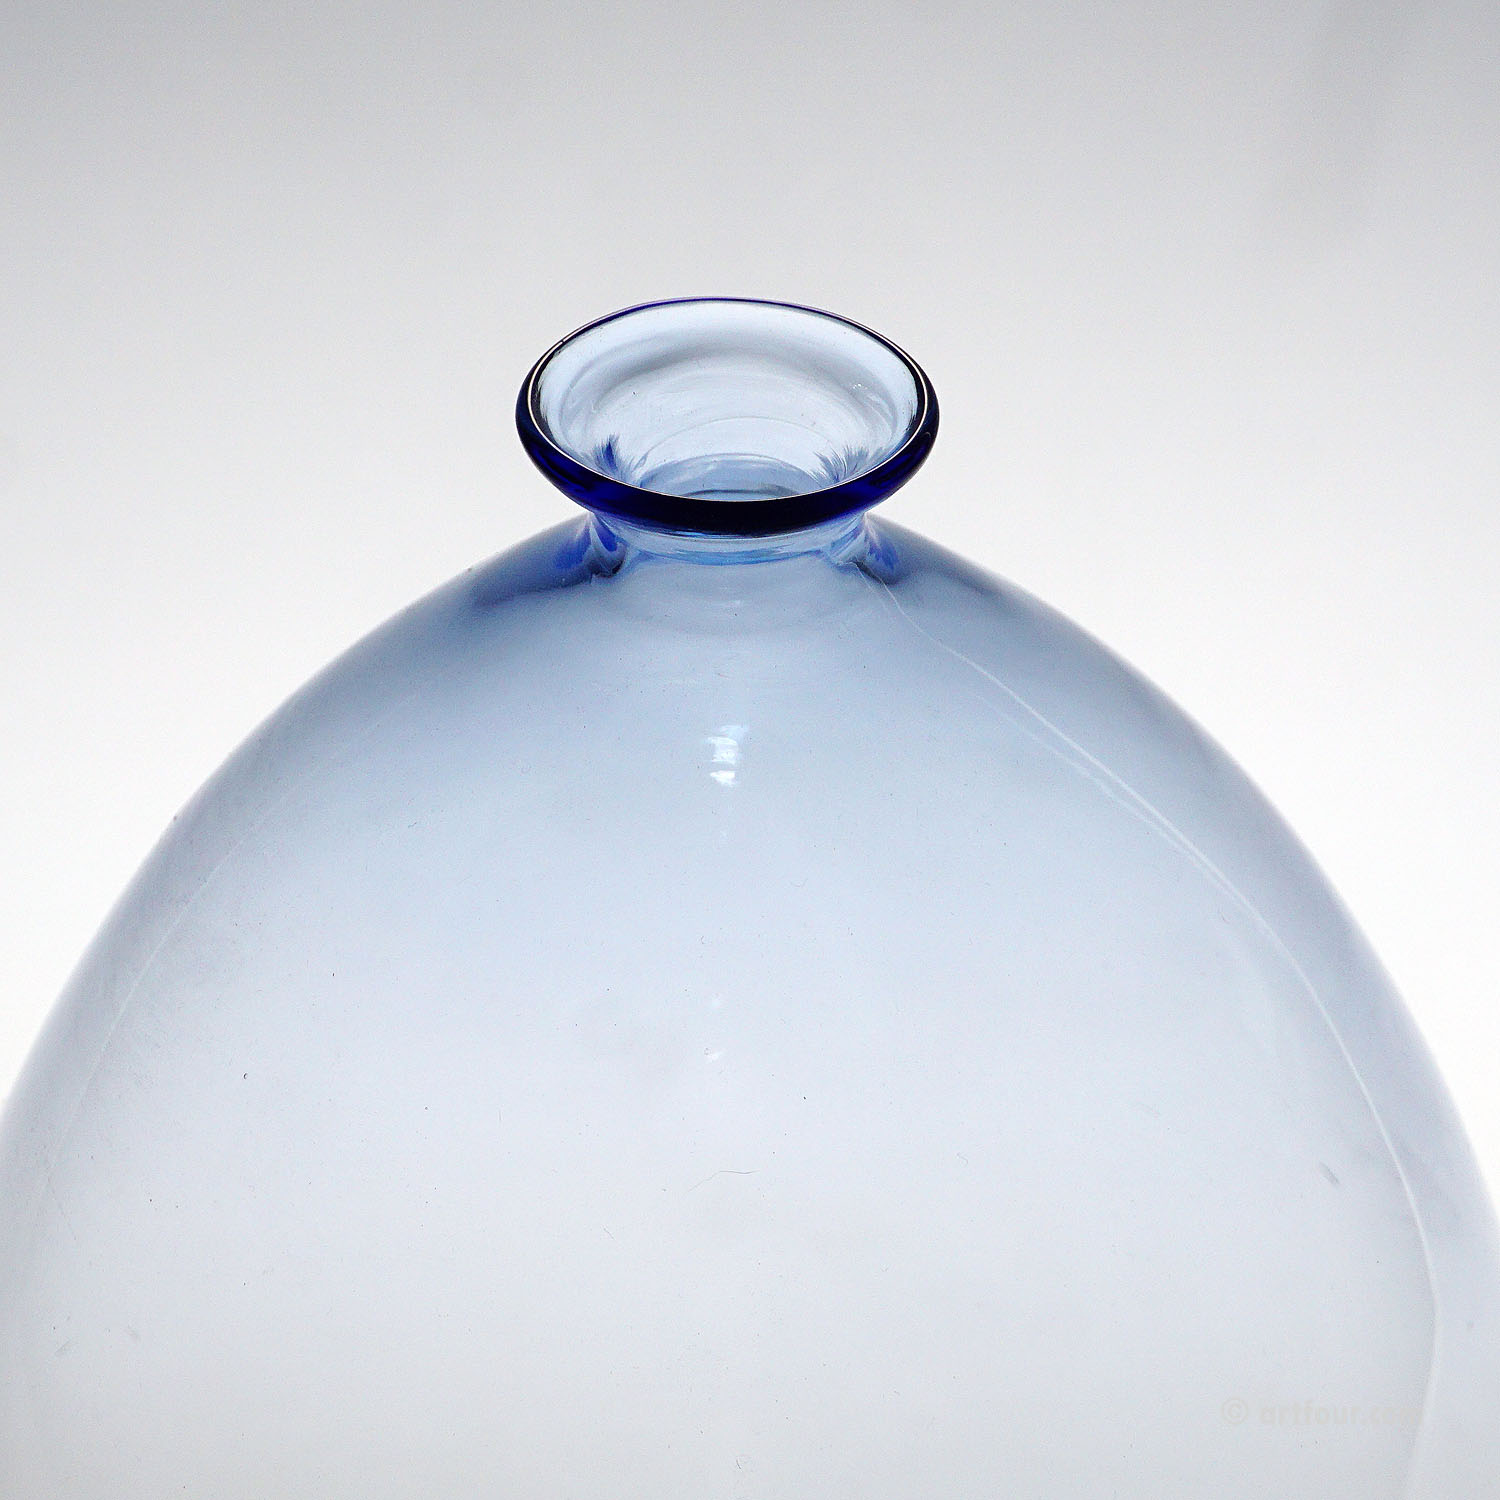 Vetro Soffiato Glass Vase attr. to Venini or Cappellin Murano 1920s